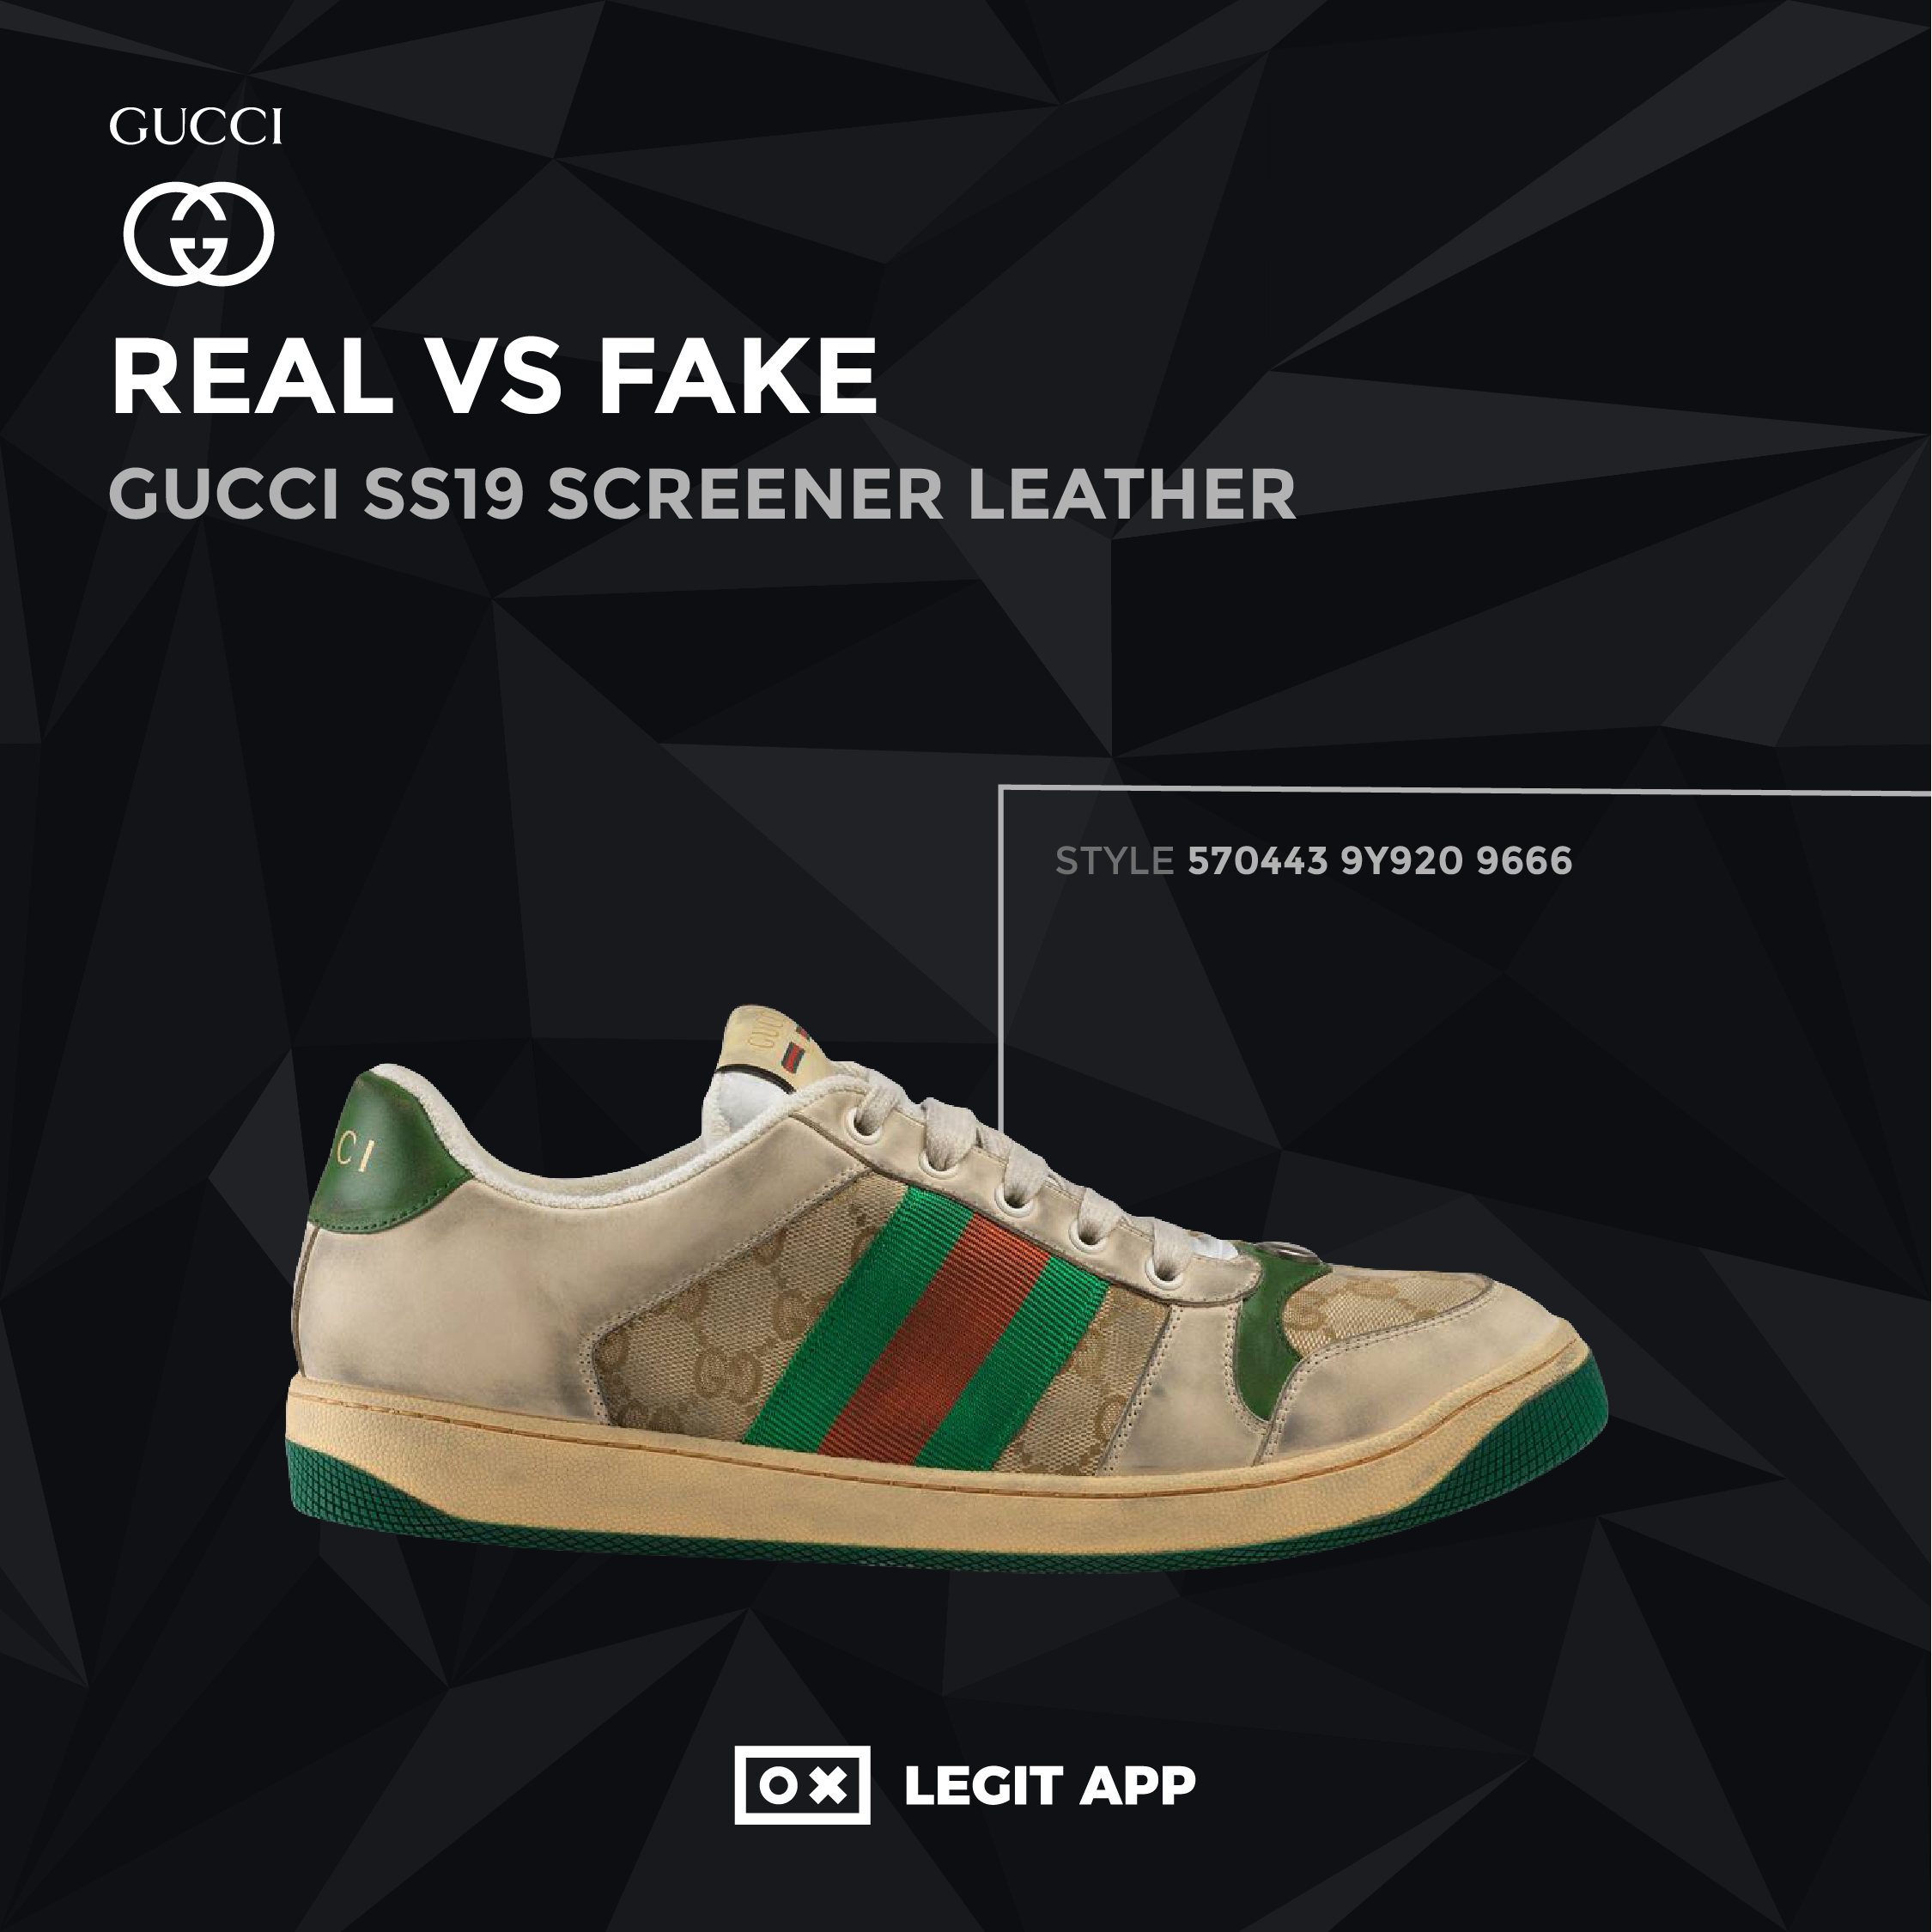 gucci shoes fake vs real